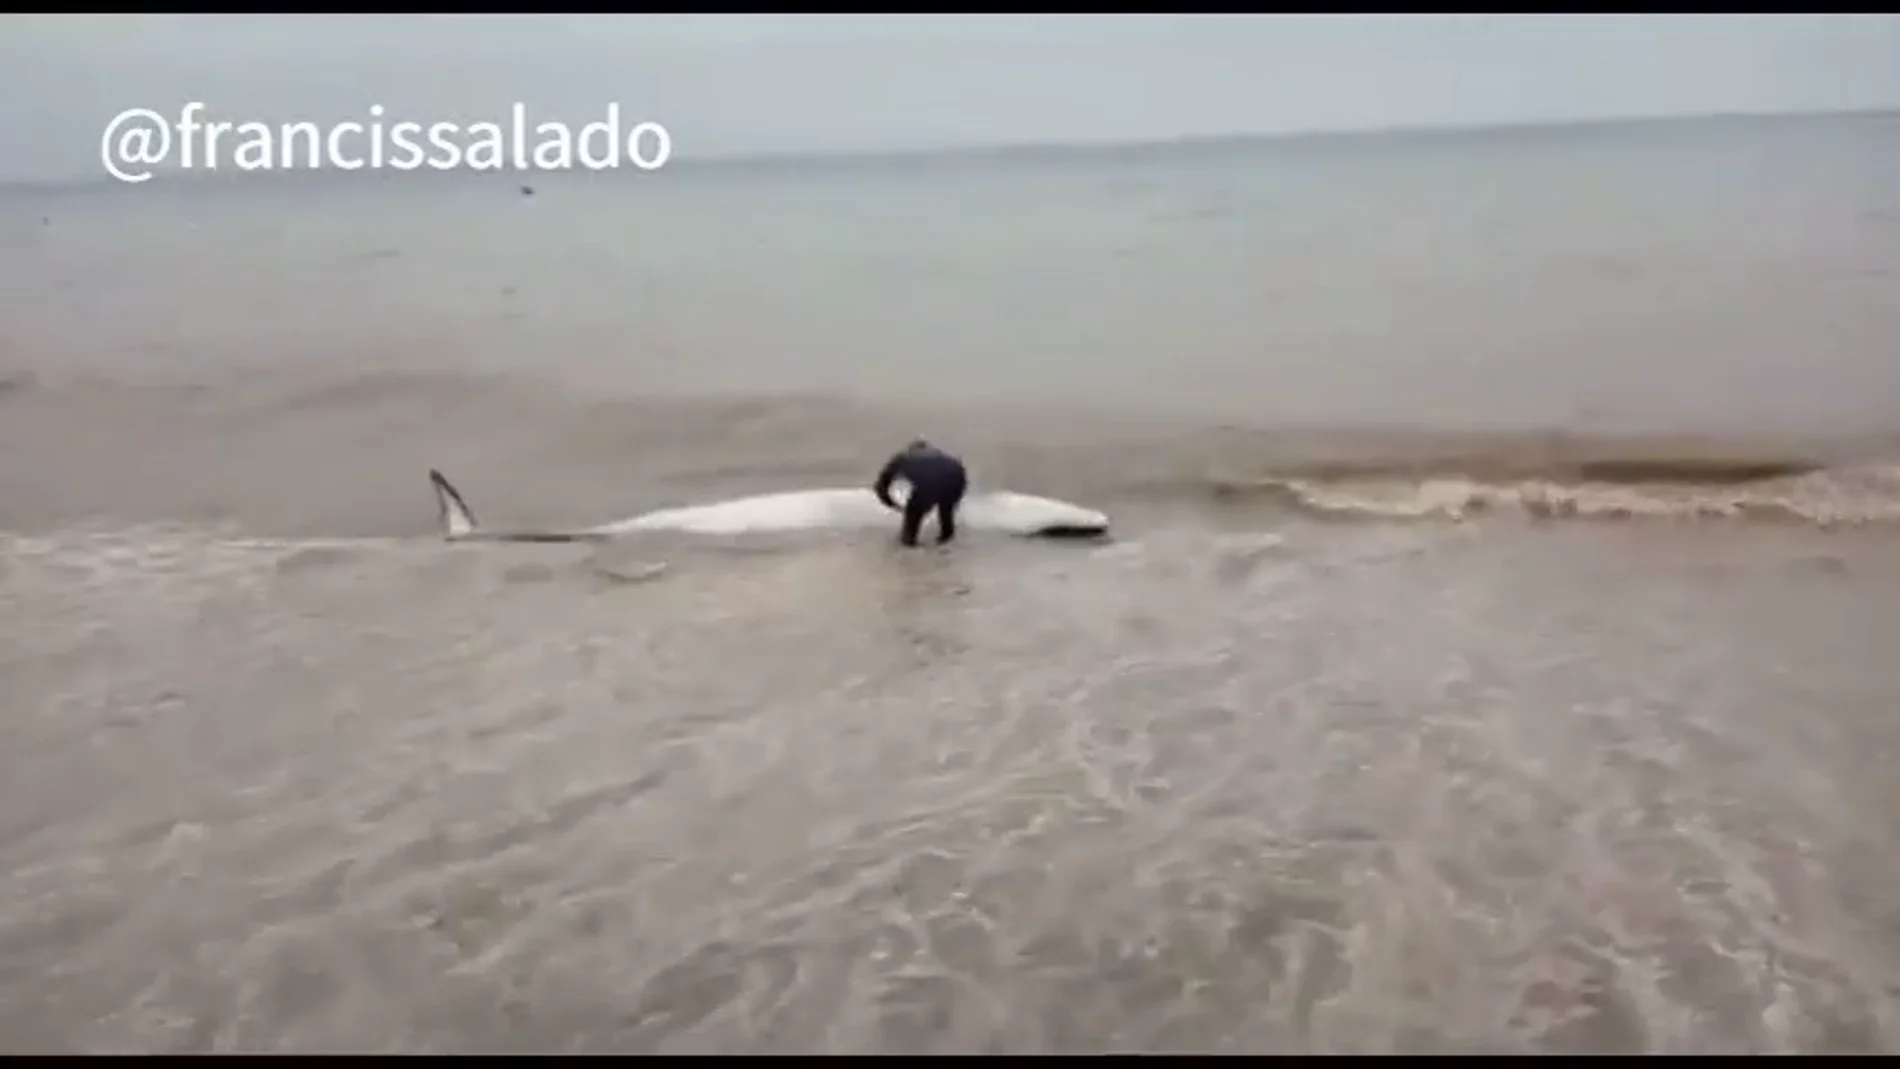 El heroico acto de un vecino de Málaga: salva la vida de una ballena varada empujándola hasta el mar